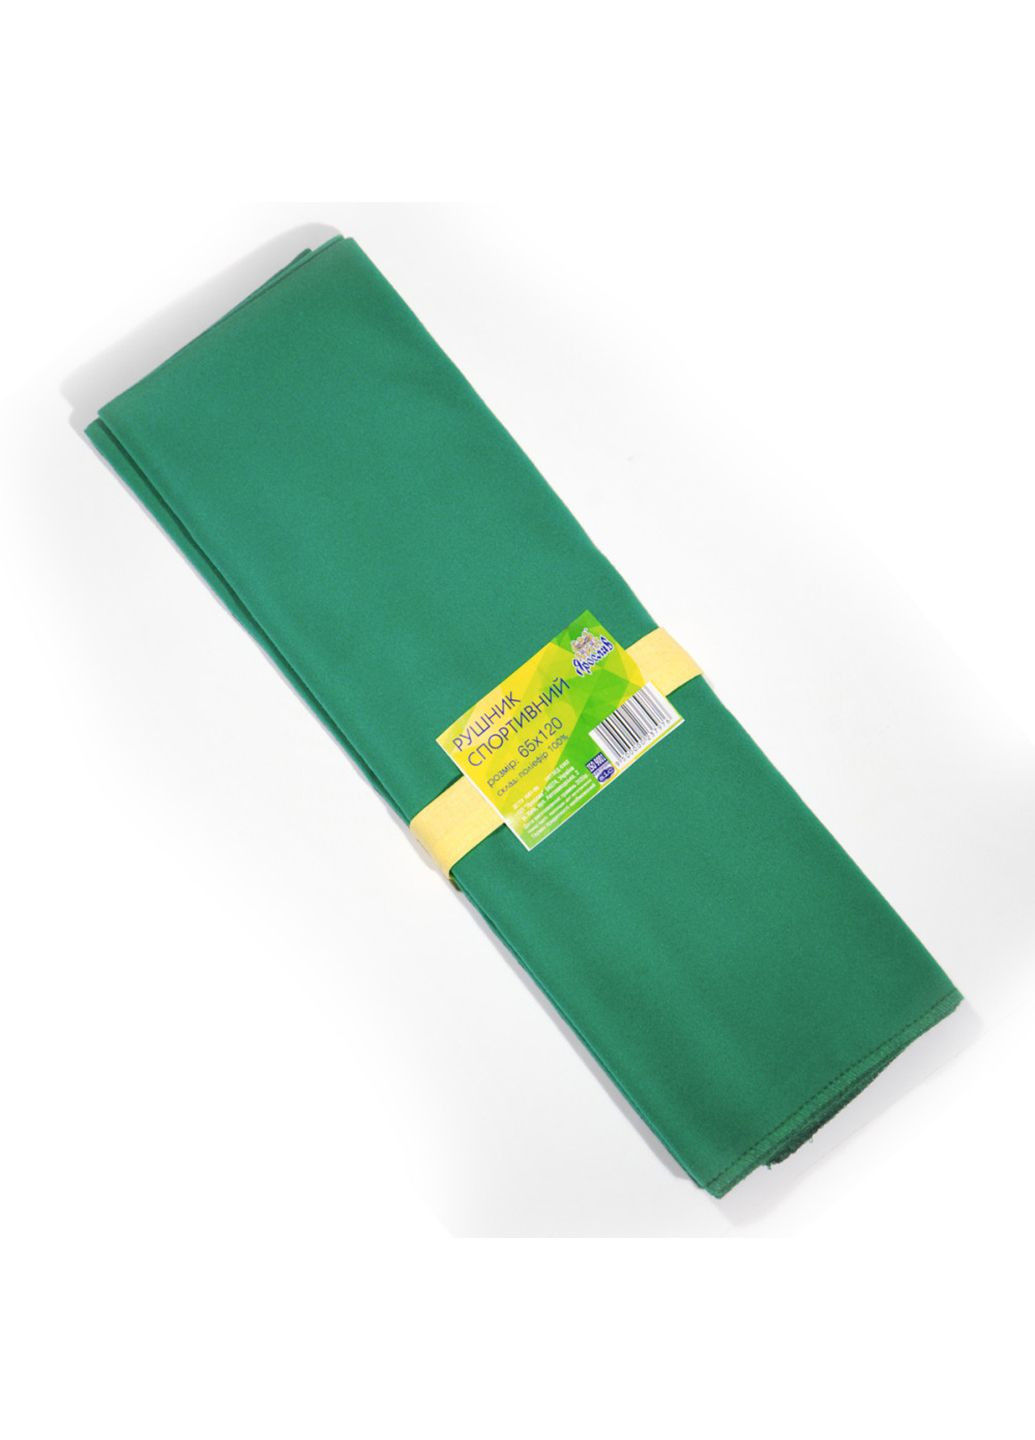 Ярослав полотенце спортивное микрофибра 40х70 зеленый производство - Украина